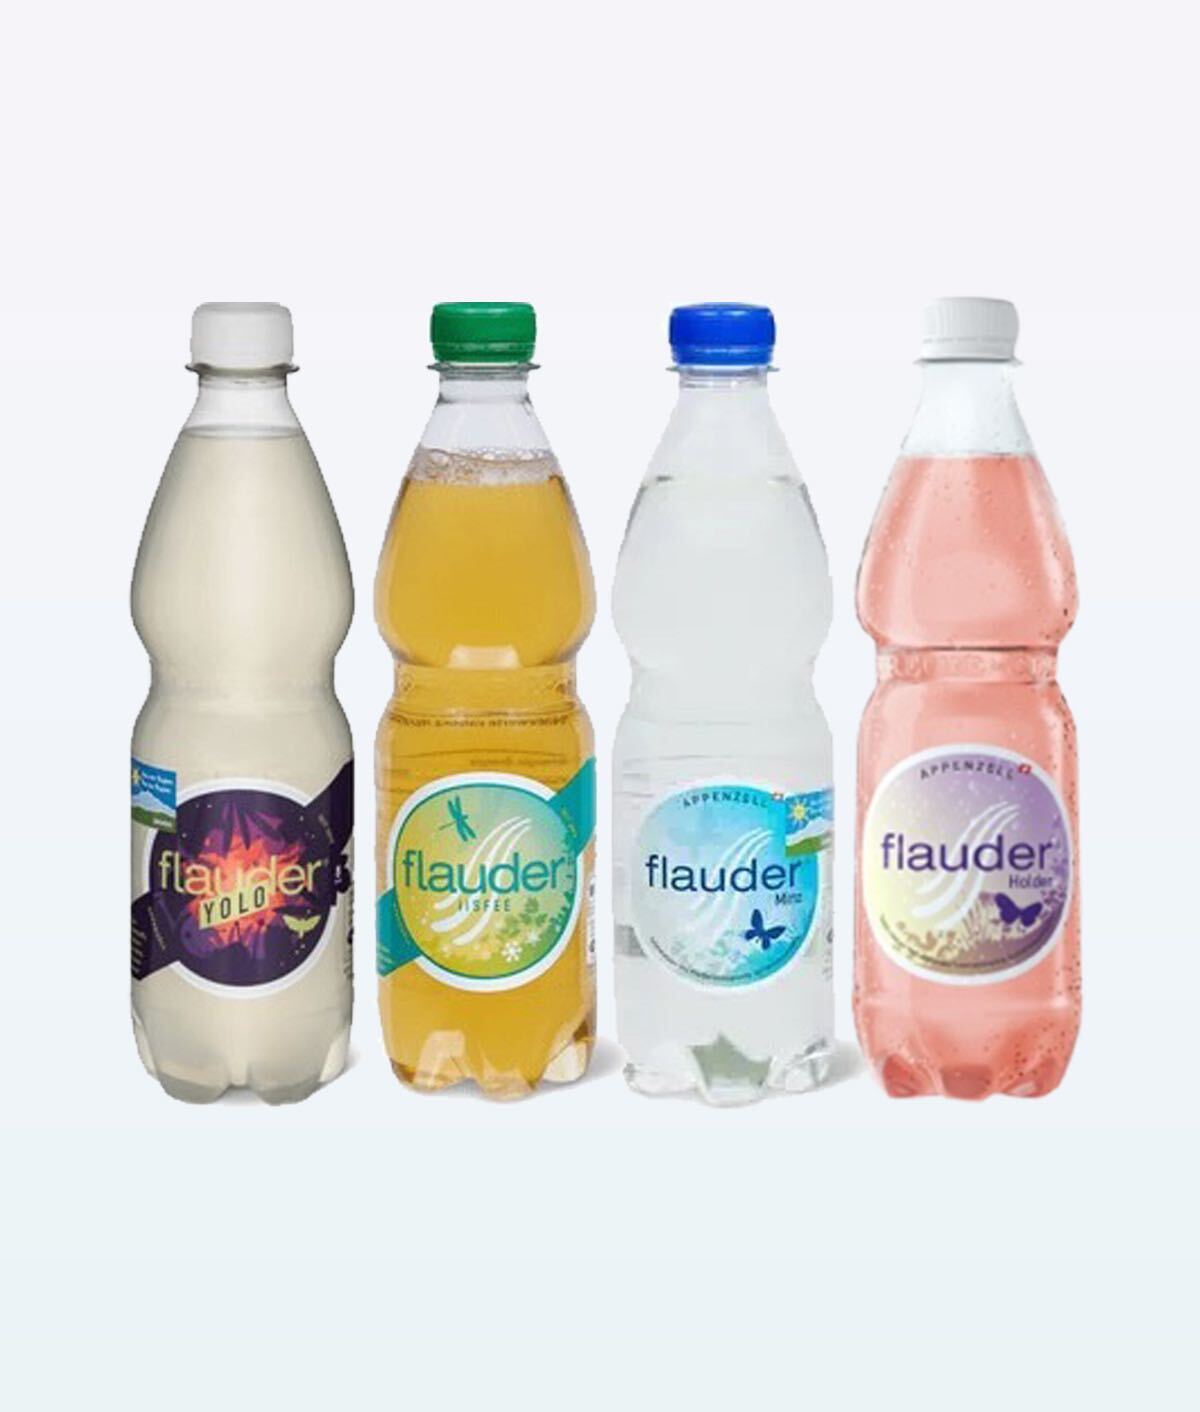 assorted-appenzell-flauder-drinks